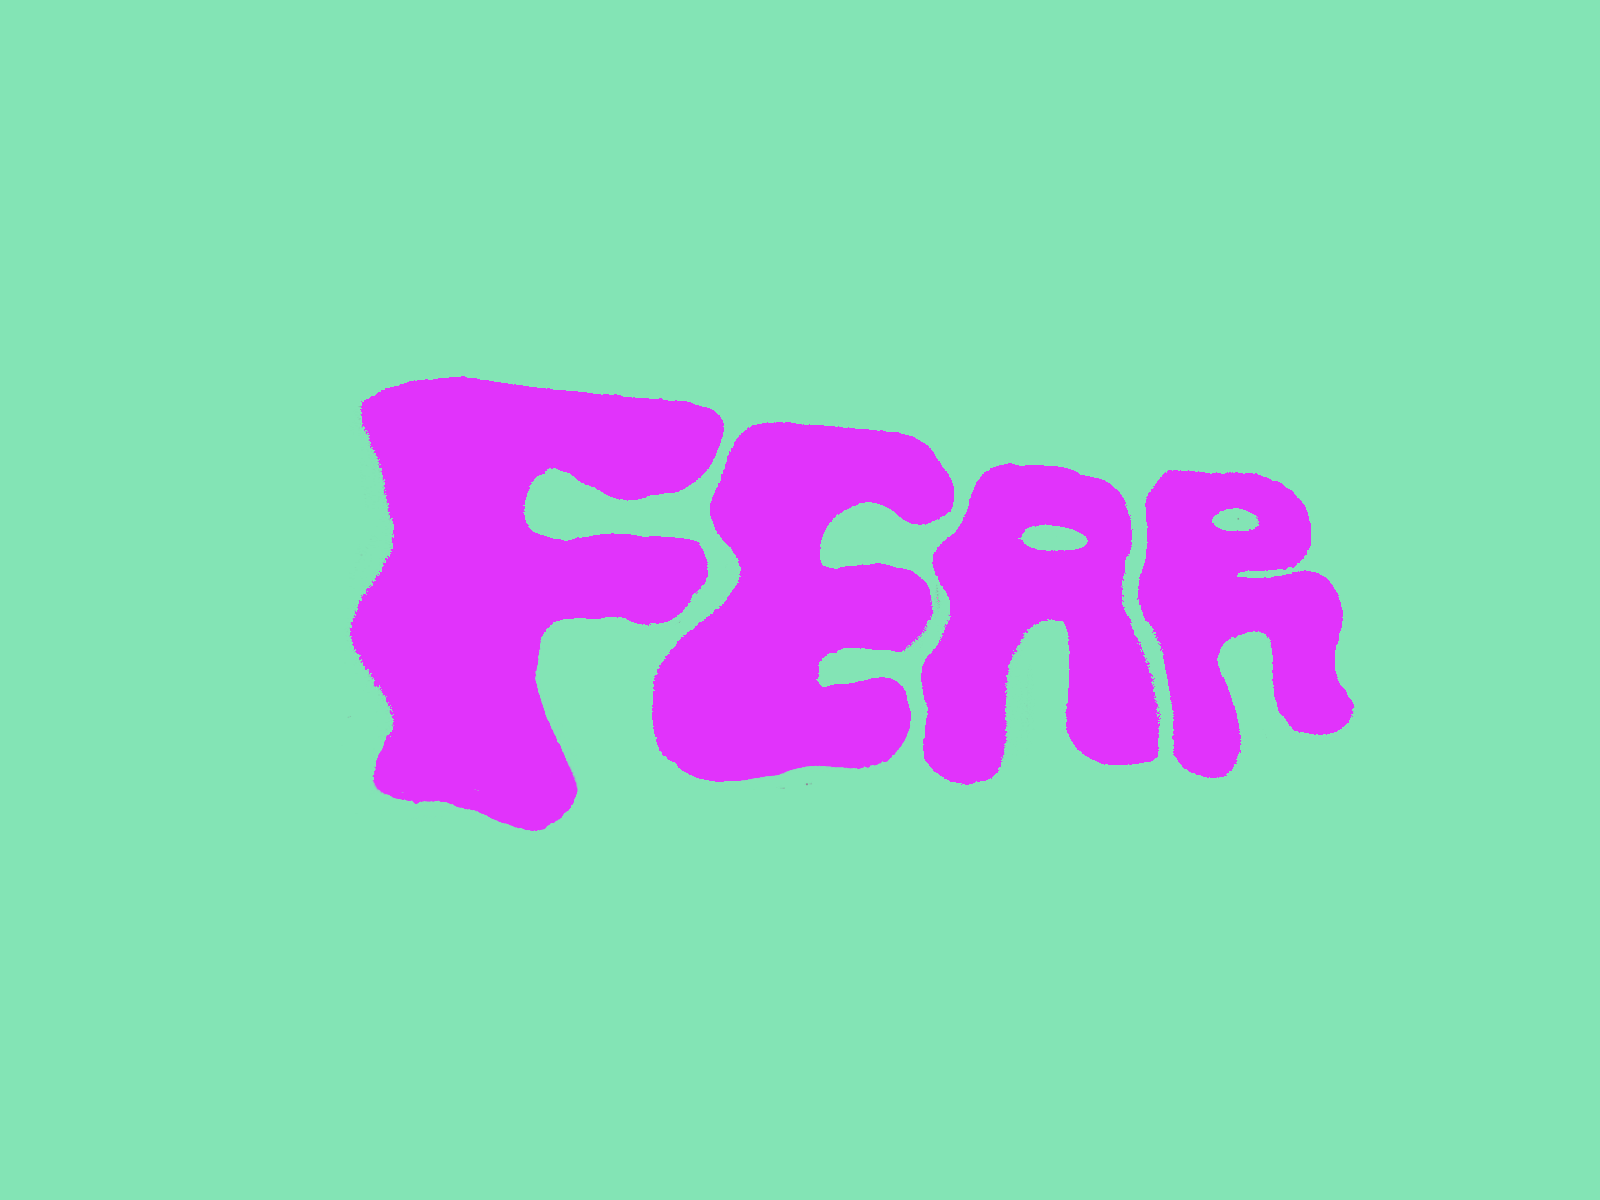 Fear Walking lettering